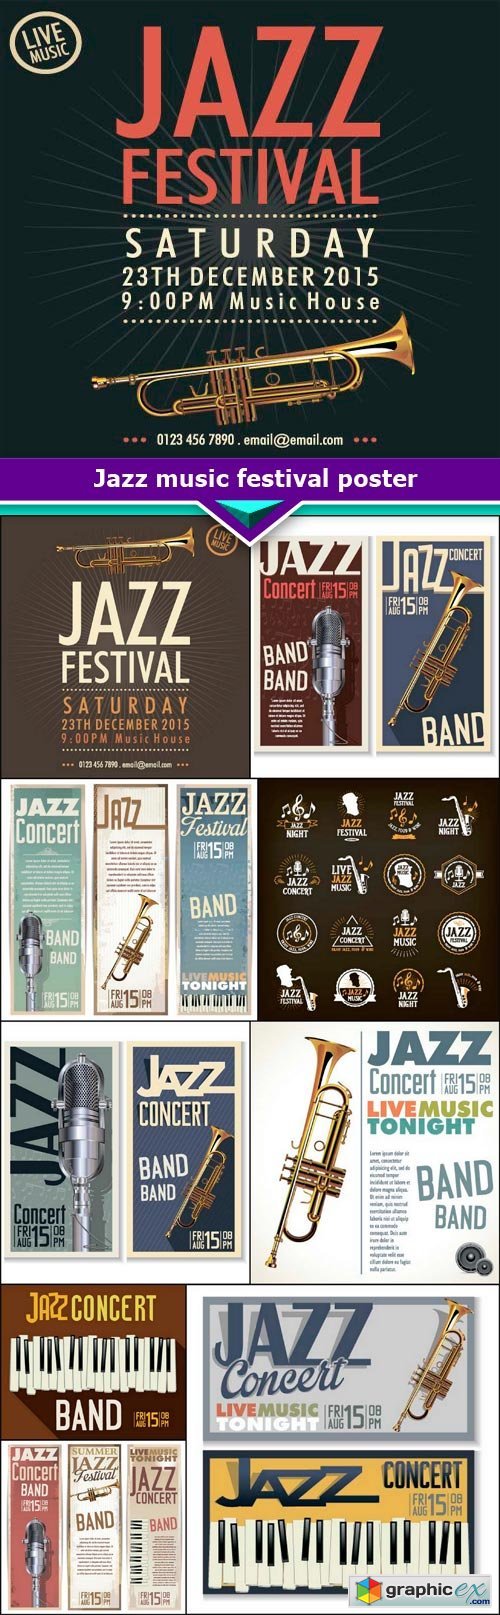 Jazz music festival poster 10x EPS